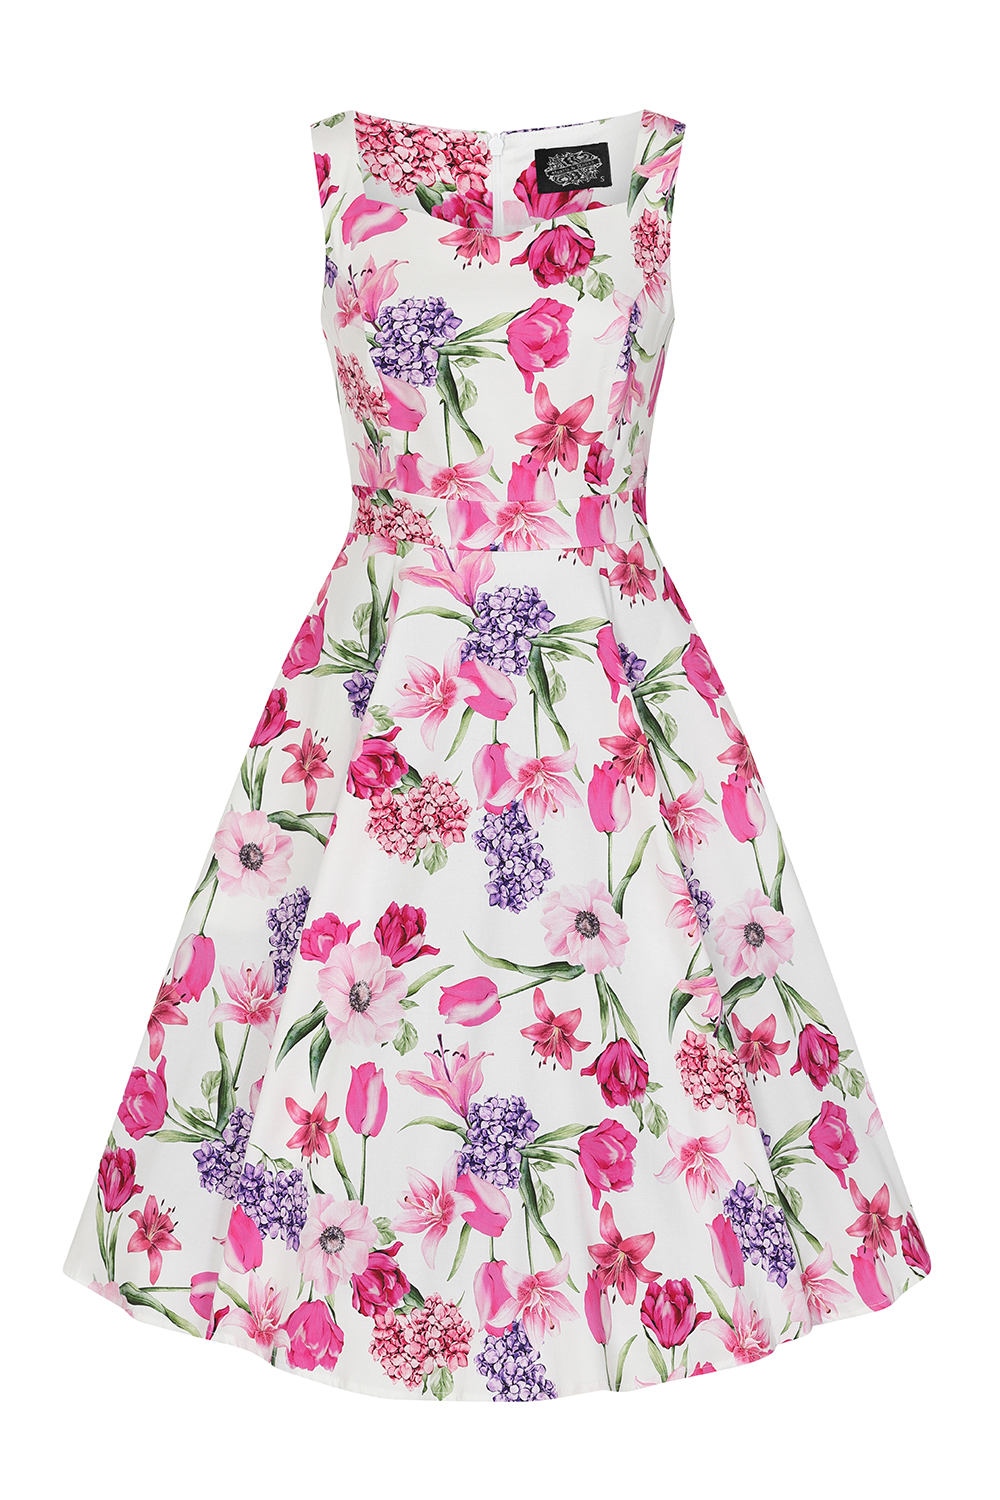 Penelope Floral Swing Dress